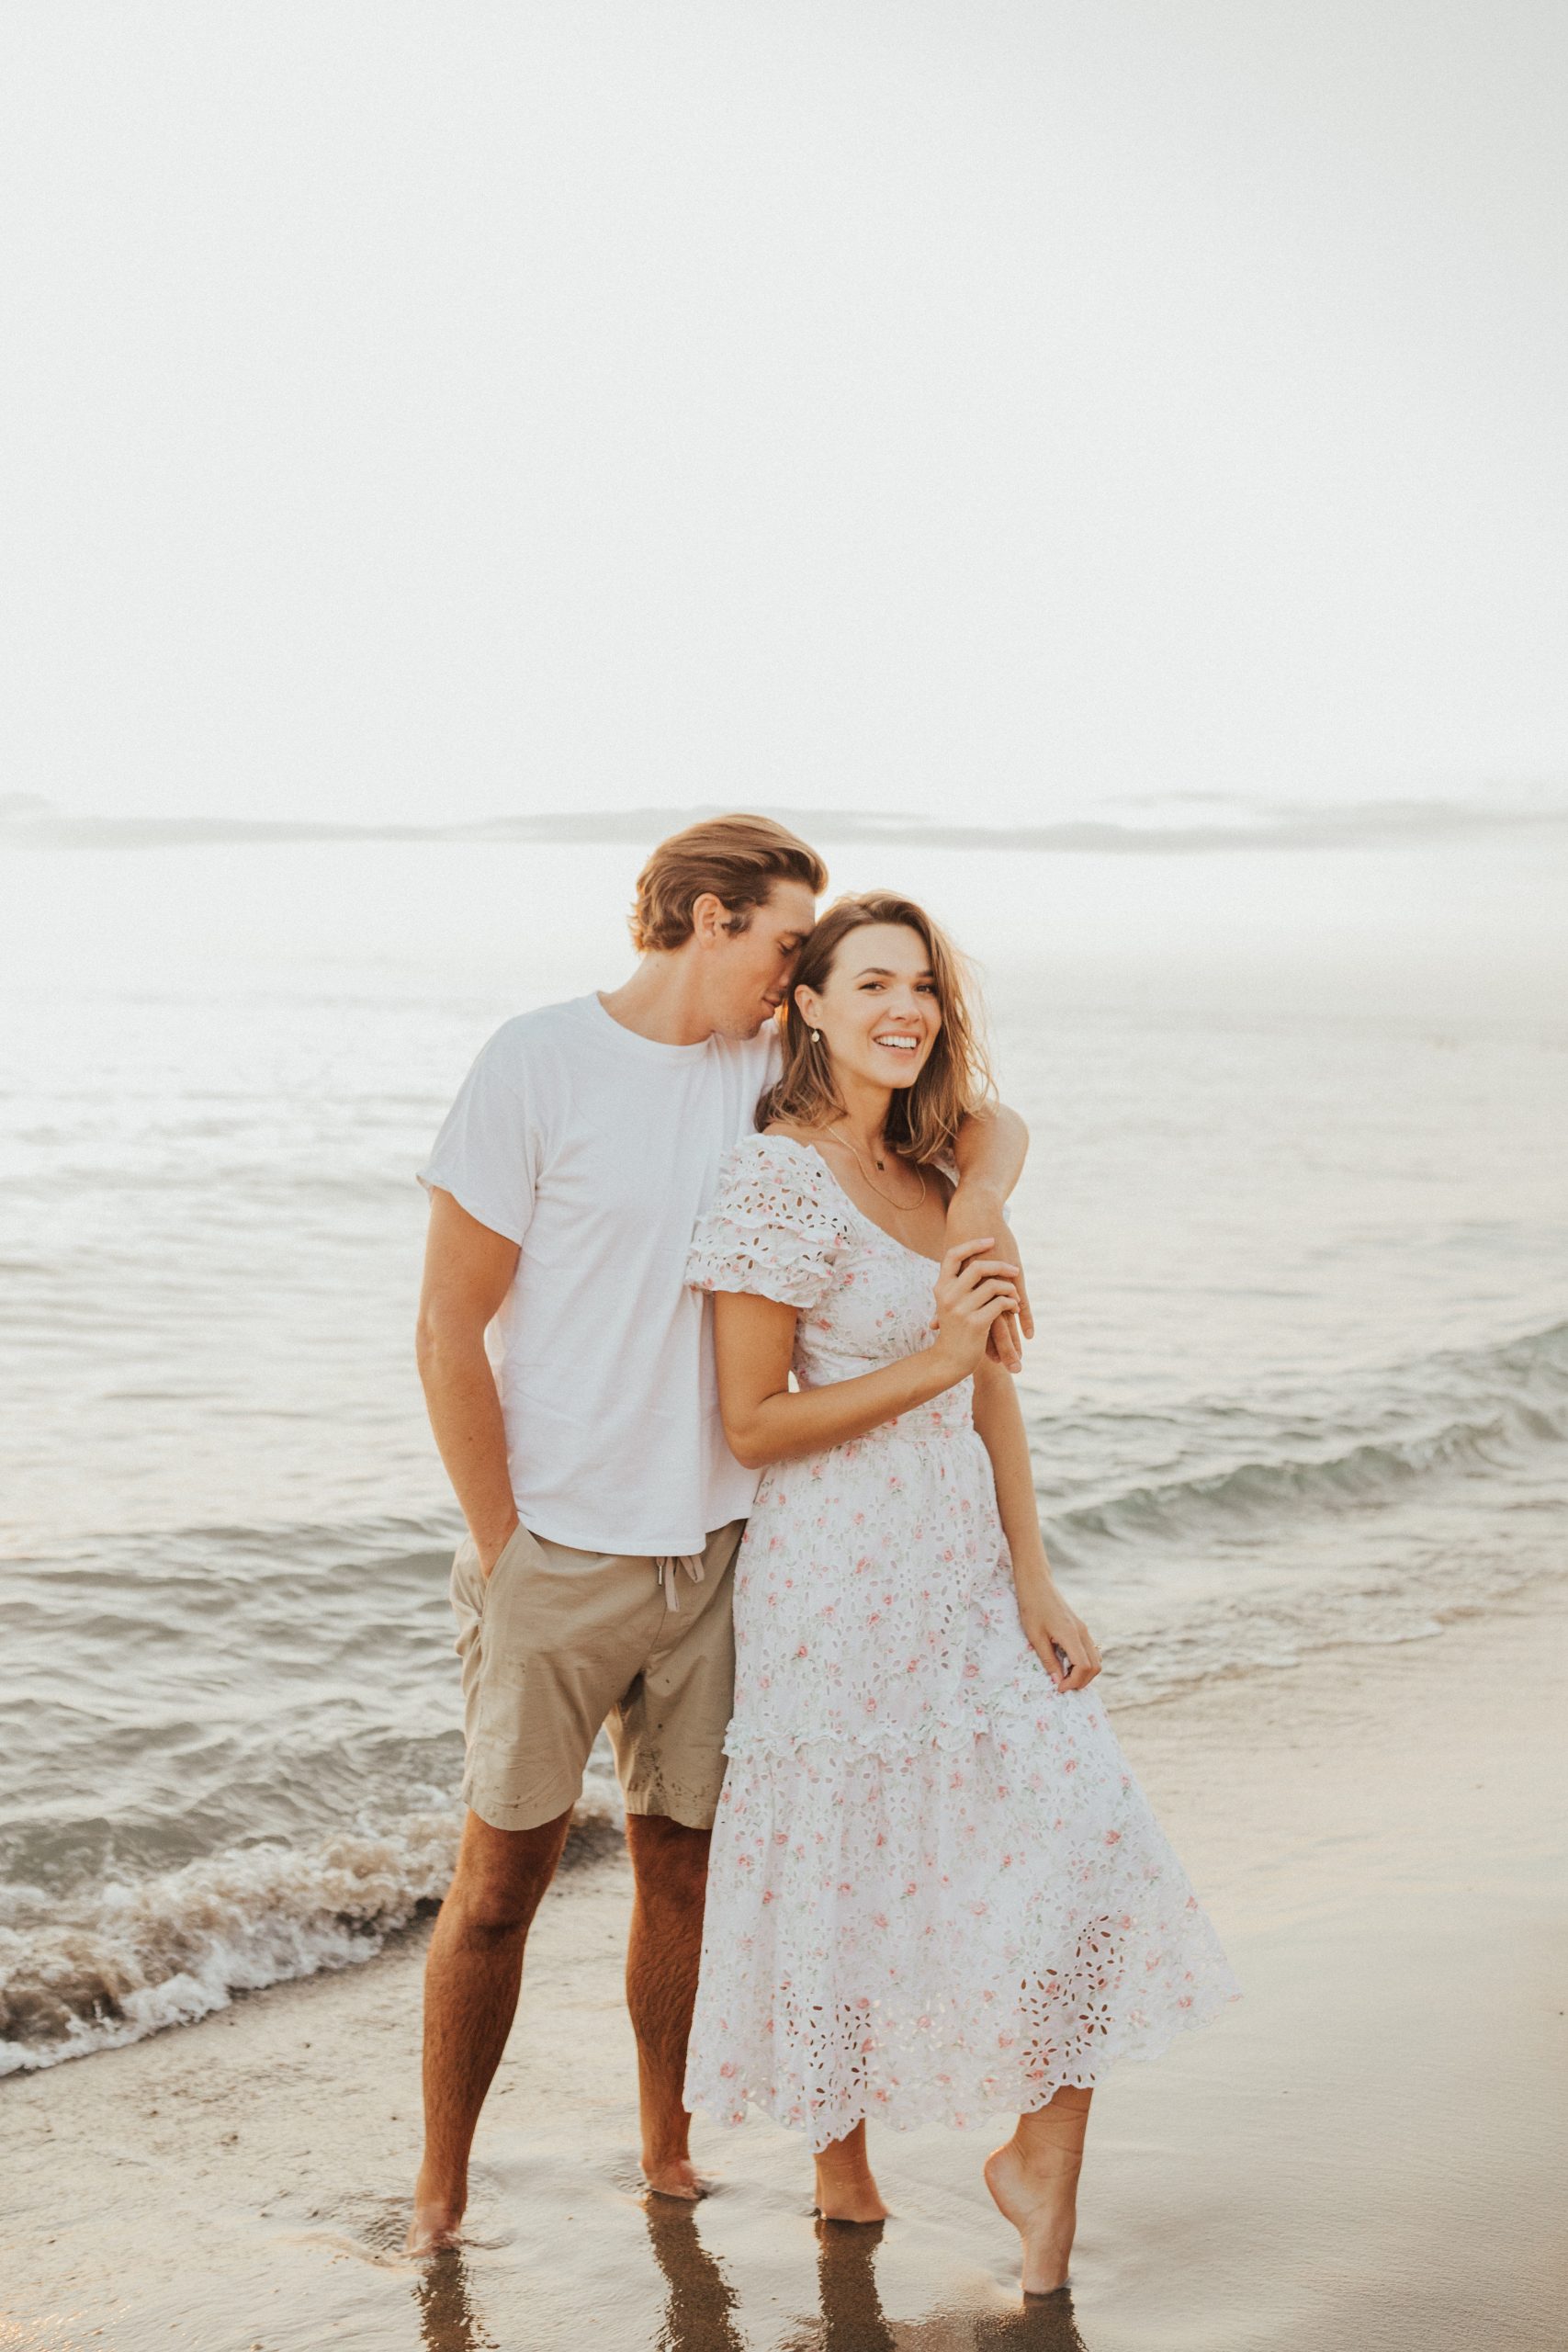 Couple on beach, beach engagement photos, engaged couple on beach